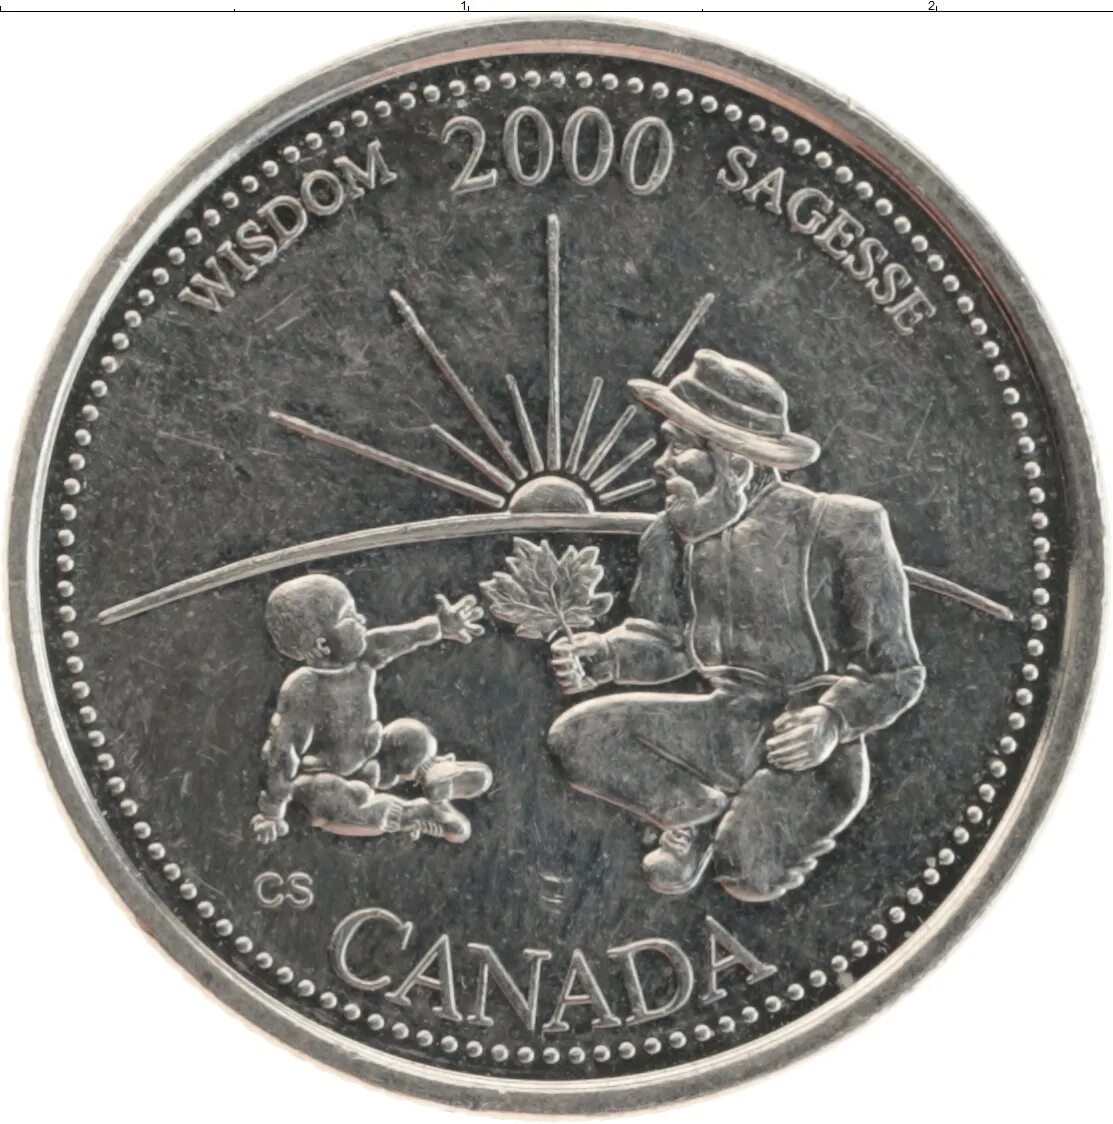 25 Центов 2000. 25 Центов 2000 года Канада. Канада 25 центов 2000 лодка. Монета Канады Миллениум 2000. Достижения 2000 годов